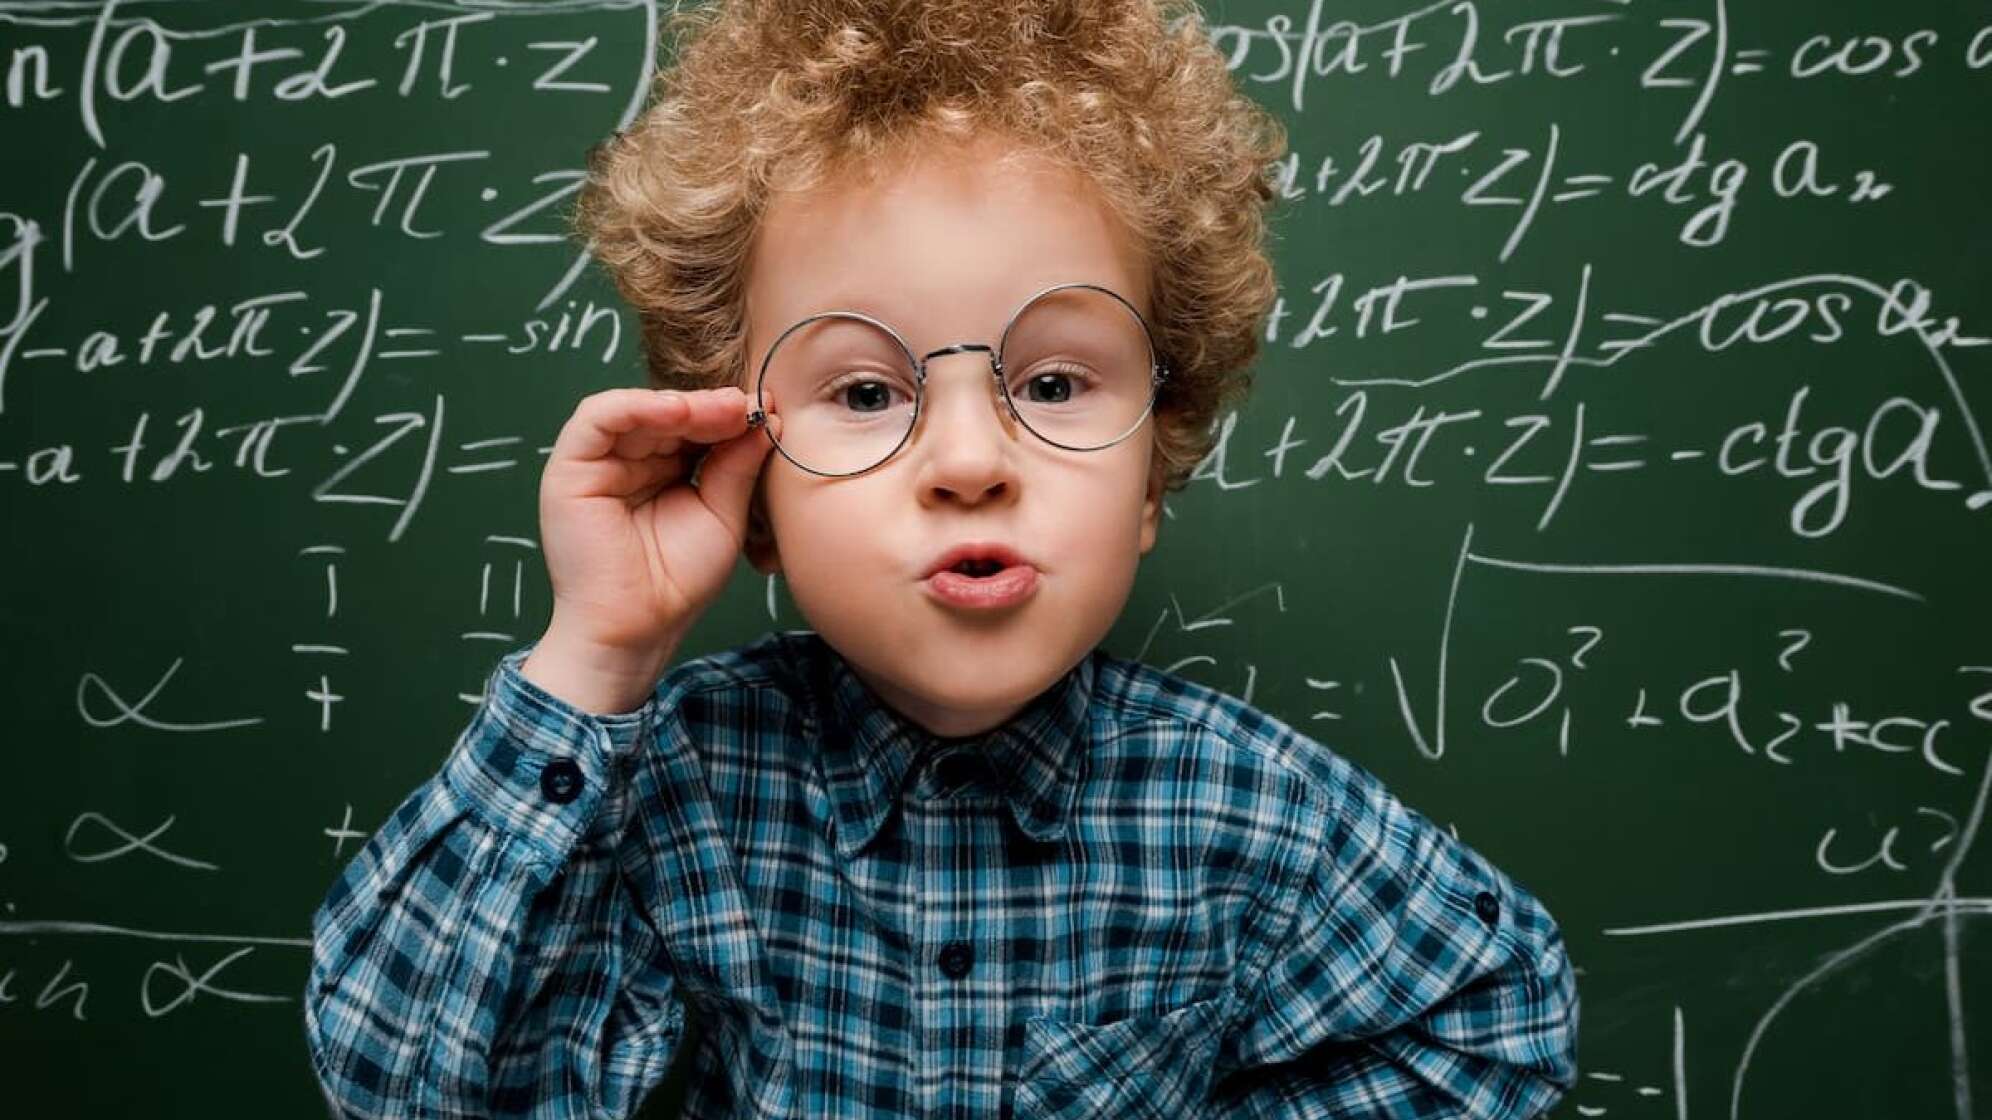 Kind mit Brille und Struppelhaaren vor beschriebener Tafel